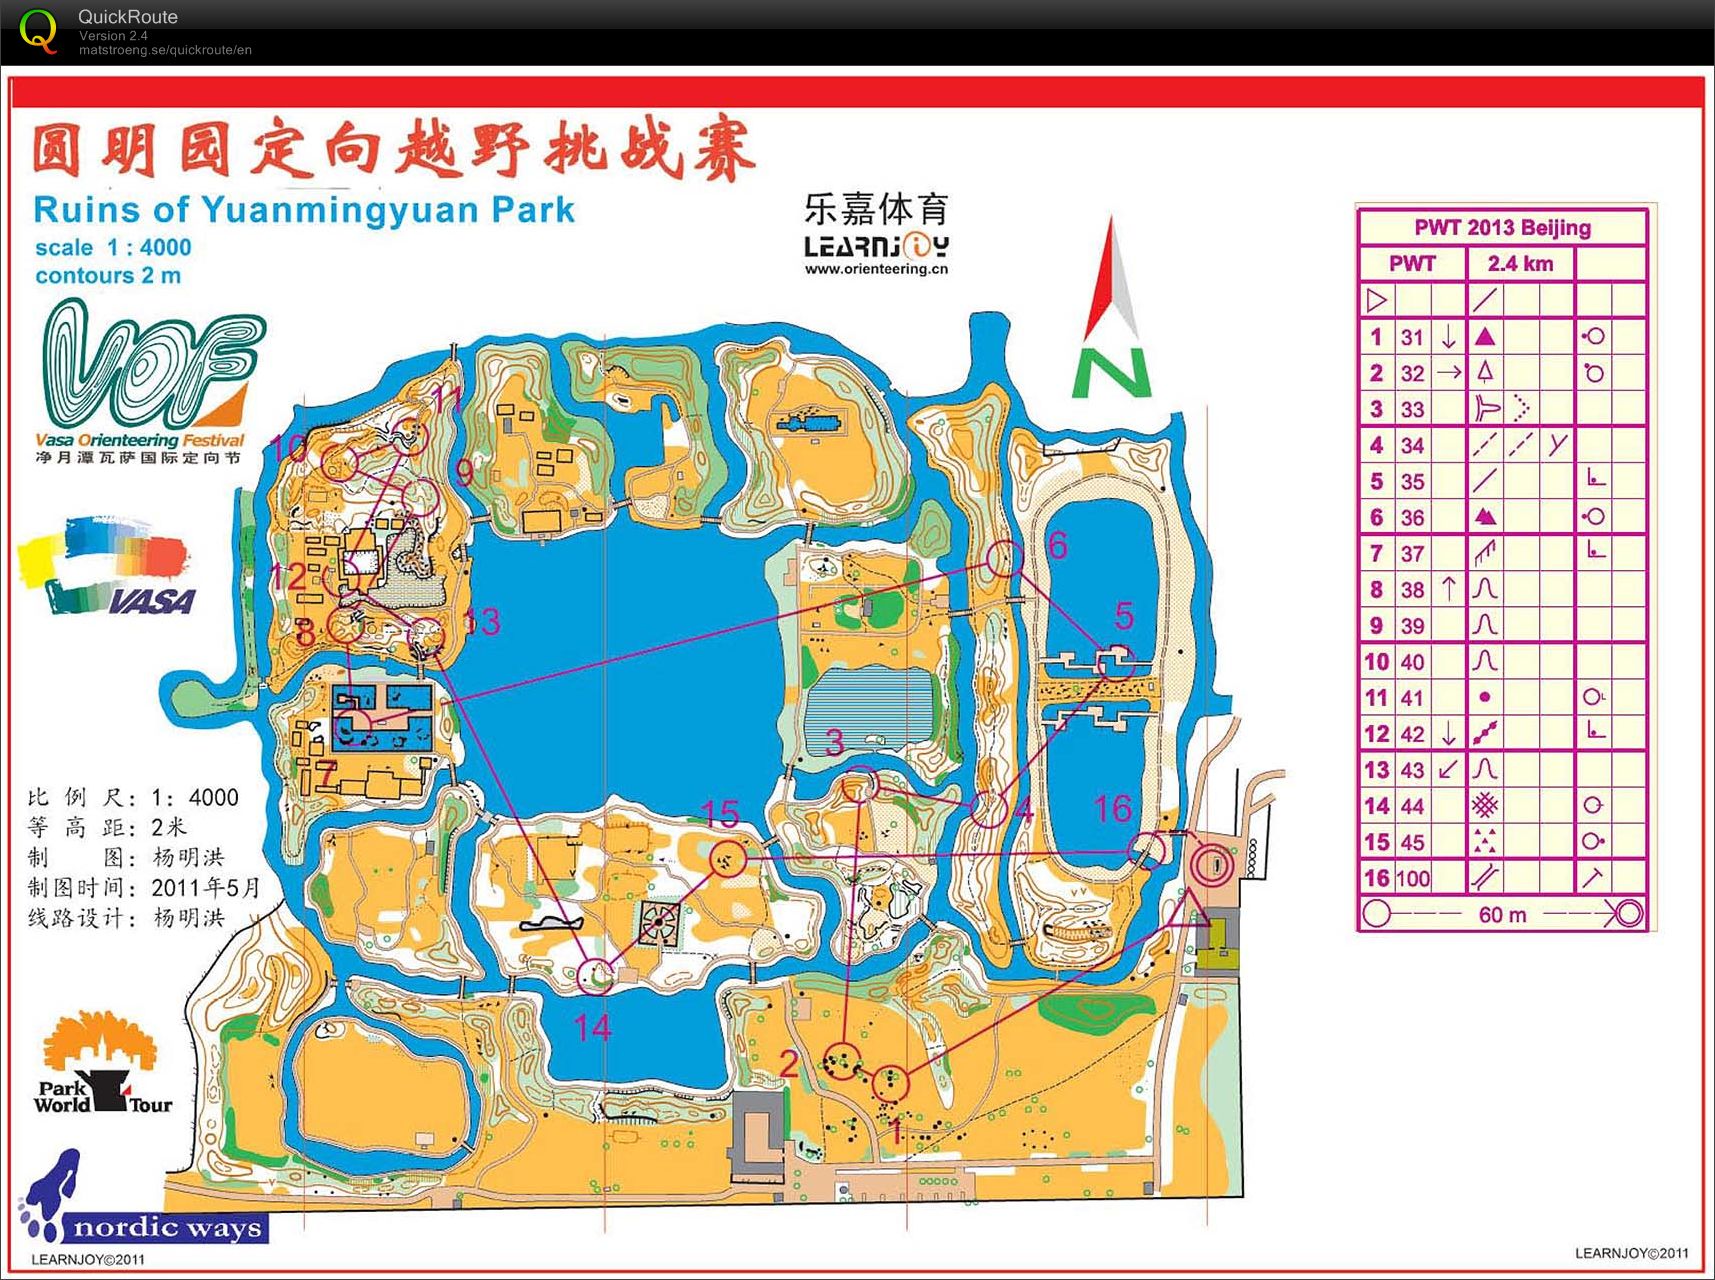 PWT Sprint Beijing (2013-10-22)